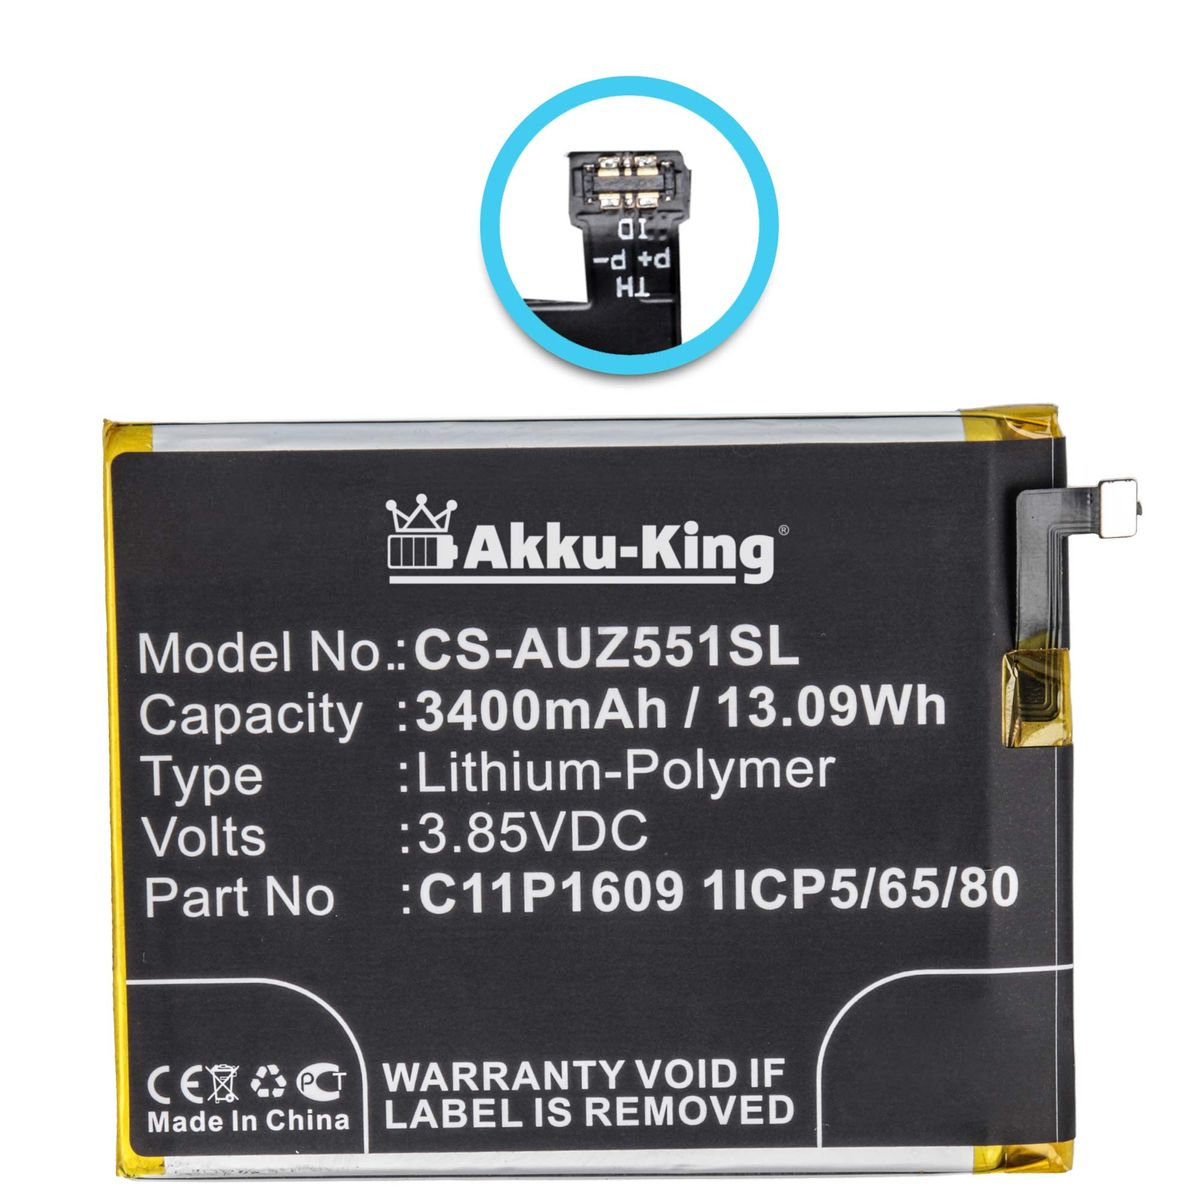 AKKU-KING 3400mAh Akku für Volt, 3.85 Li-Polymer Handy-Akku, Asus C11P1609